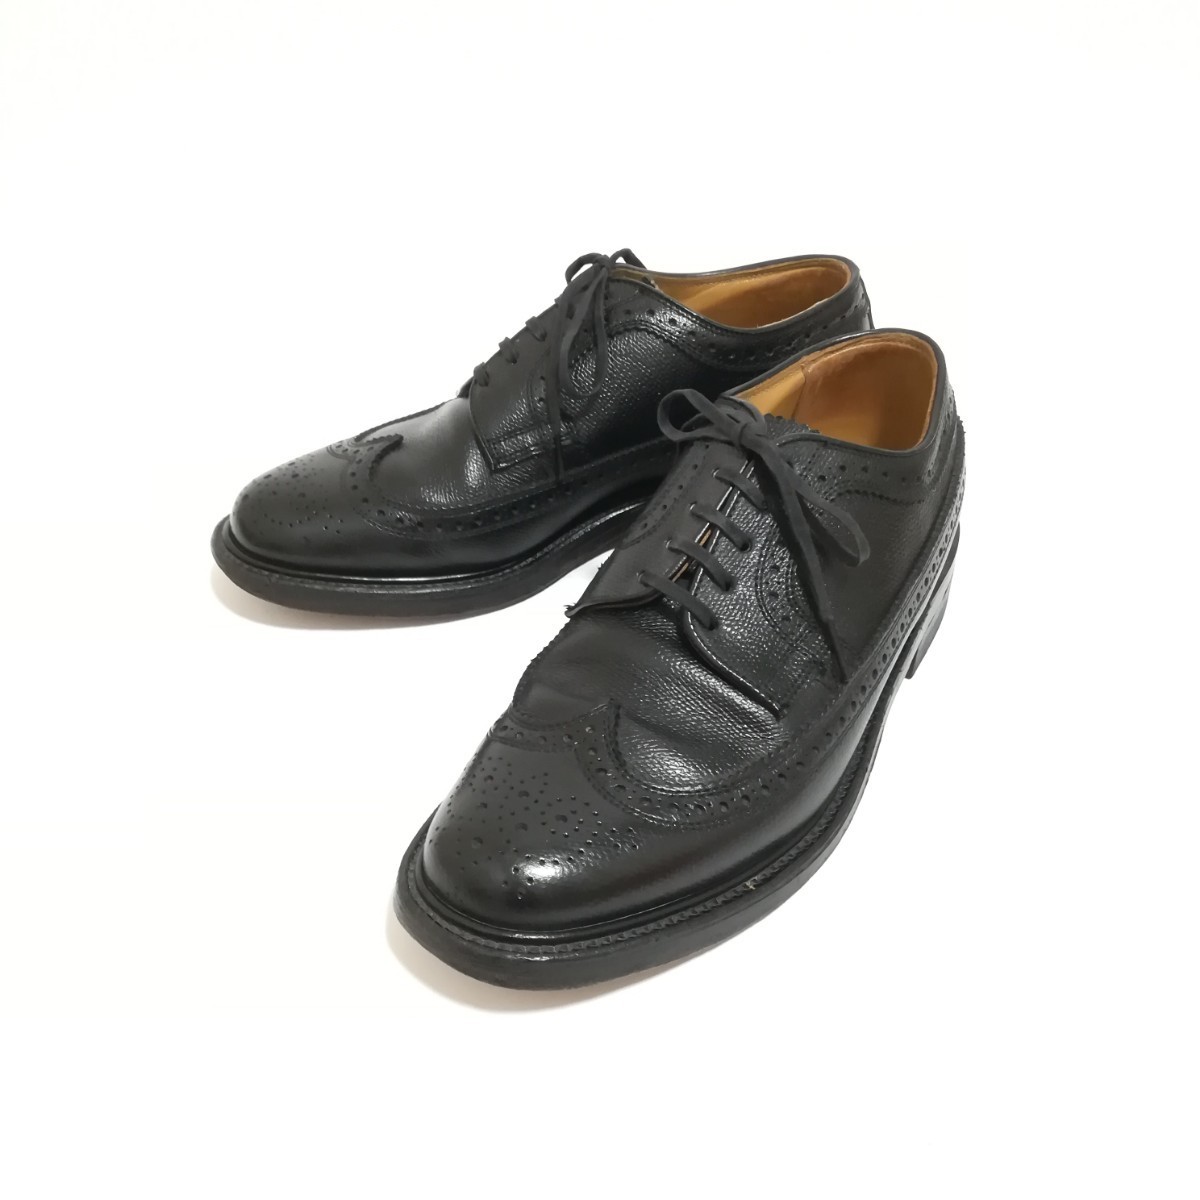 【REGAL】リーガル インペリアルグレード 革靴 ウイングチップ 2235 メンズ ビジネスシューズ ブラック